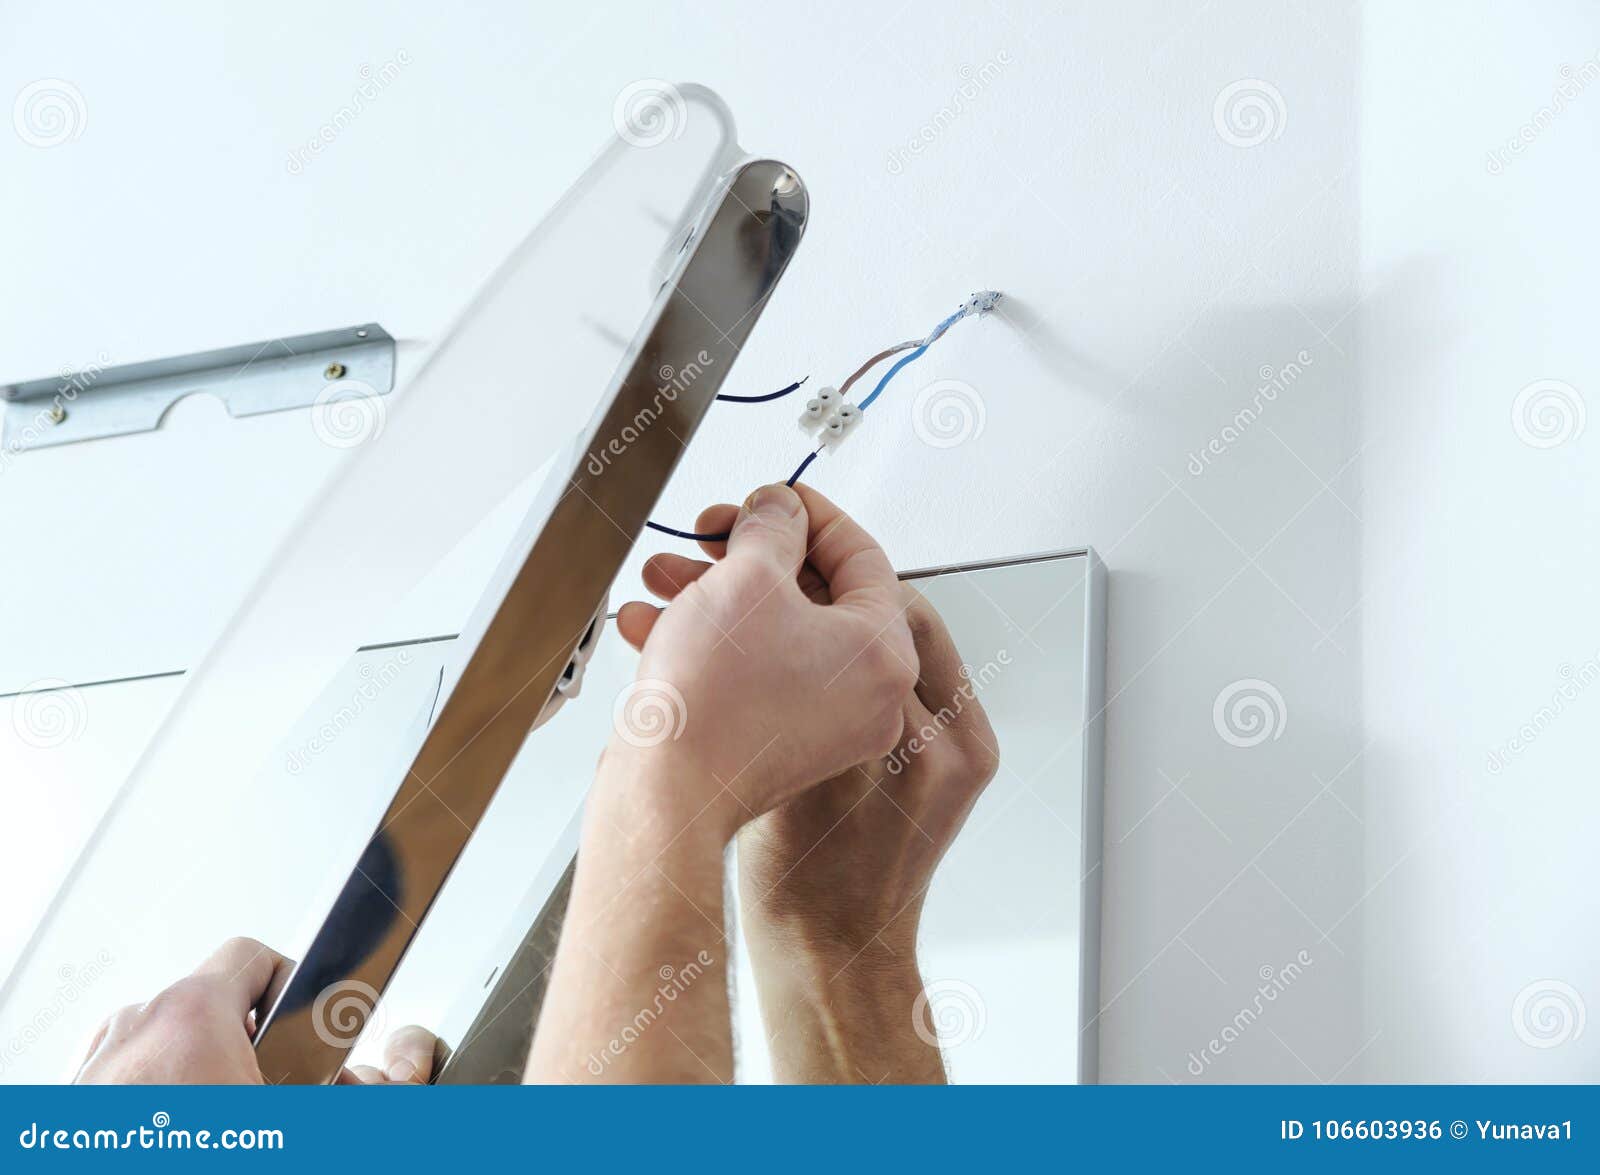 Lampa установить на телевизор. Скрыть кабели над зеркалом в ванне. Как спрятать провод в ванной над зеркалом. Как замаскировать провод над зеркалом. Как закрыть кабель над зеркалом.